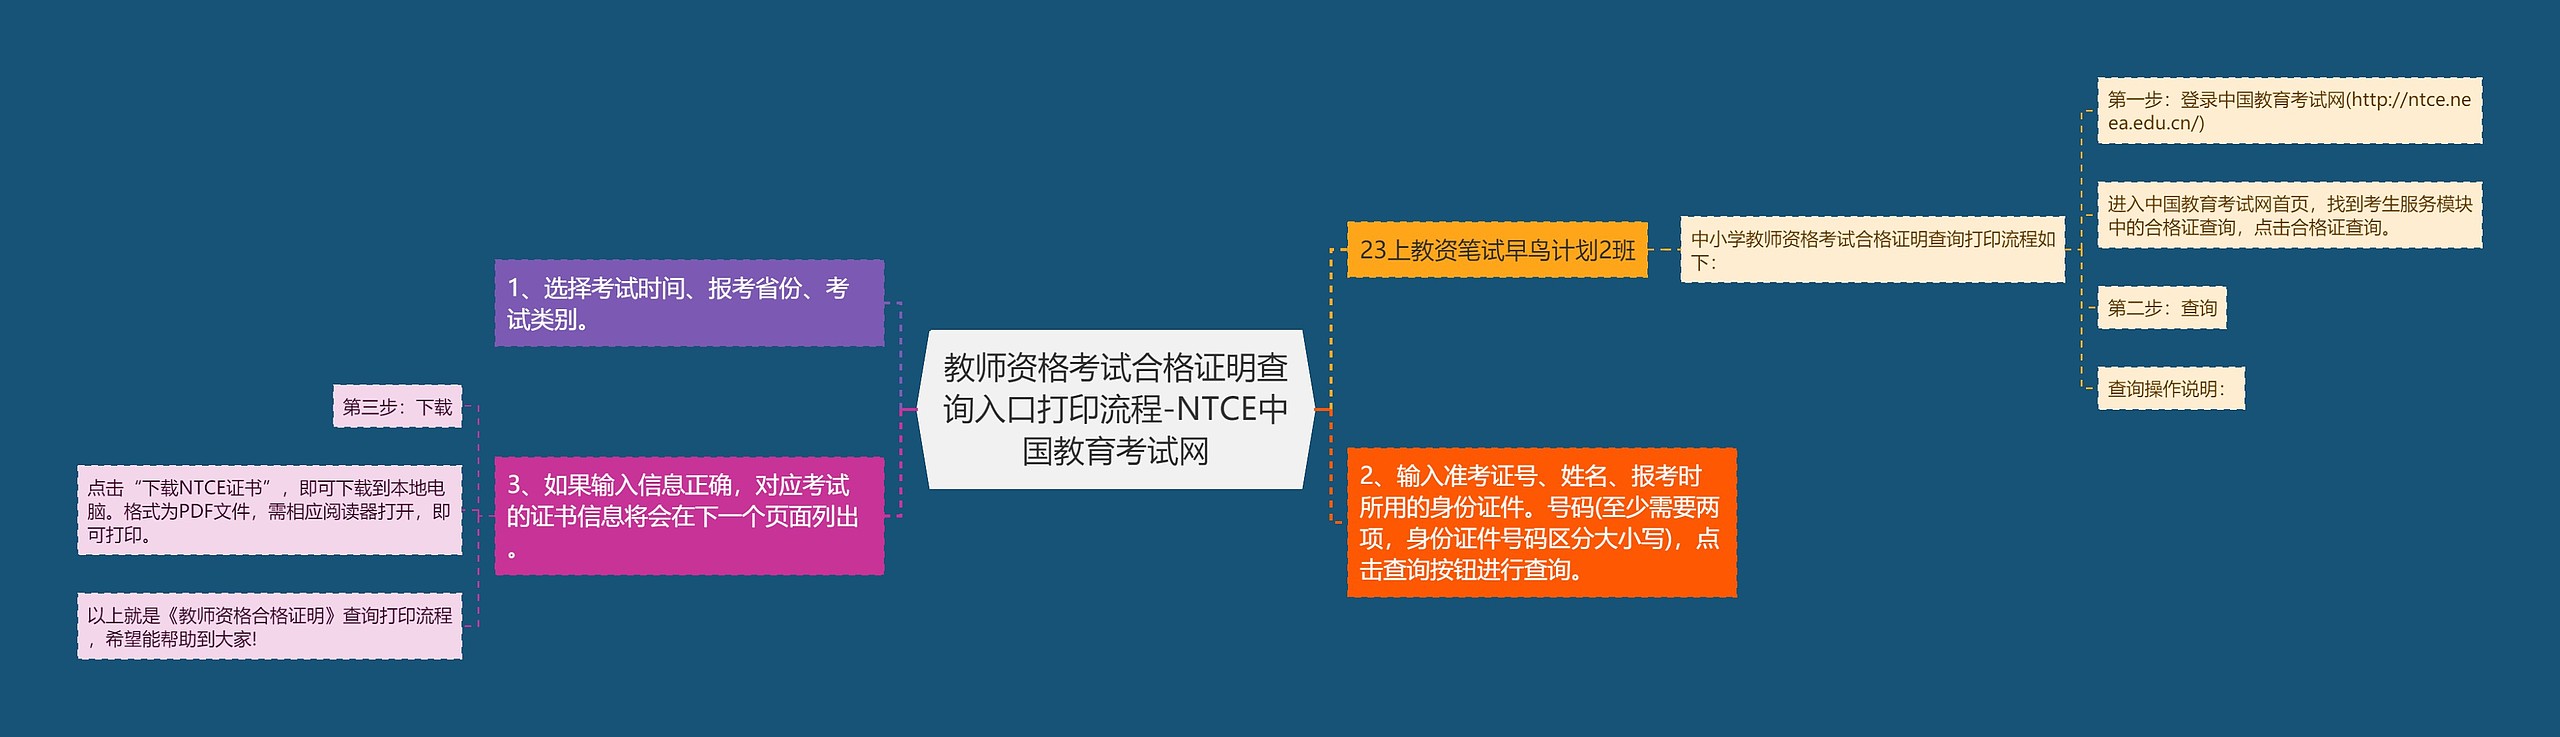 教师资格考试合格证明查询入口打印流程-NTCE中国教育考试网